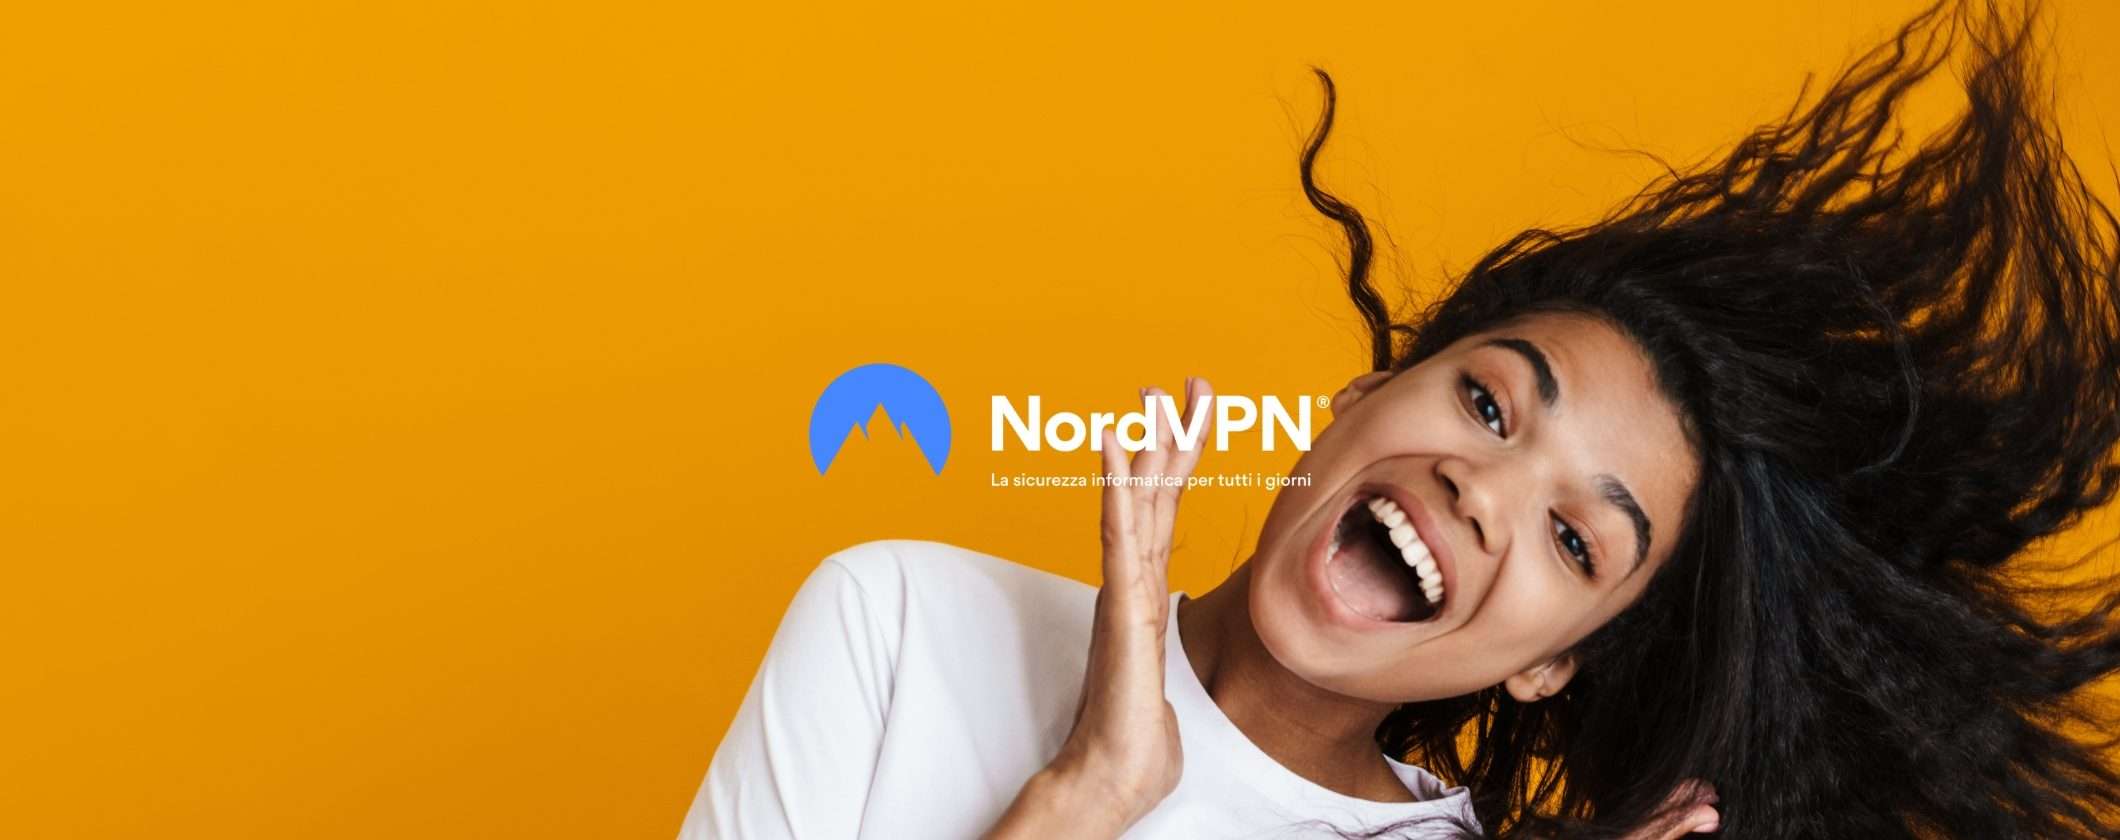 VPN di qualità al miglior prezzo? Prova NordVPN scontata del 59%